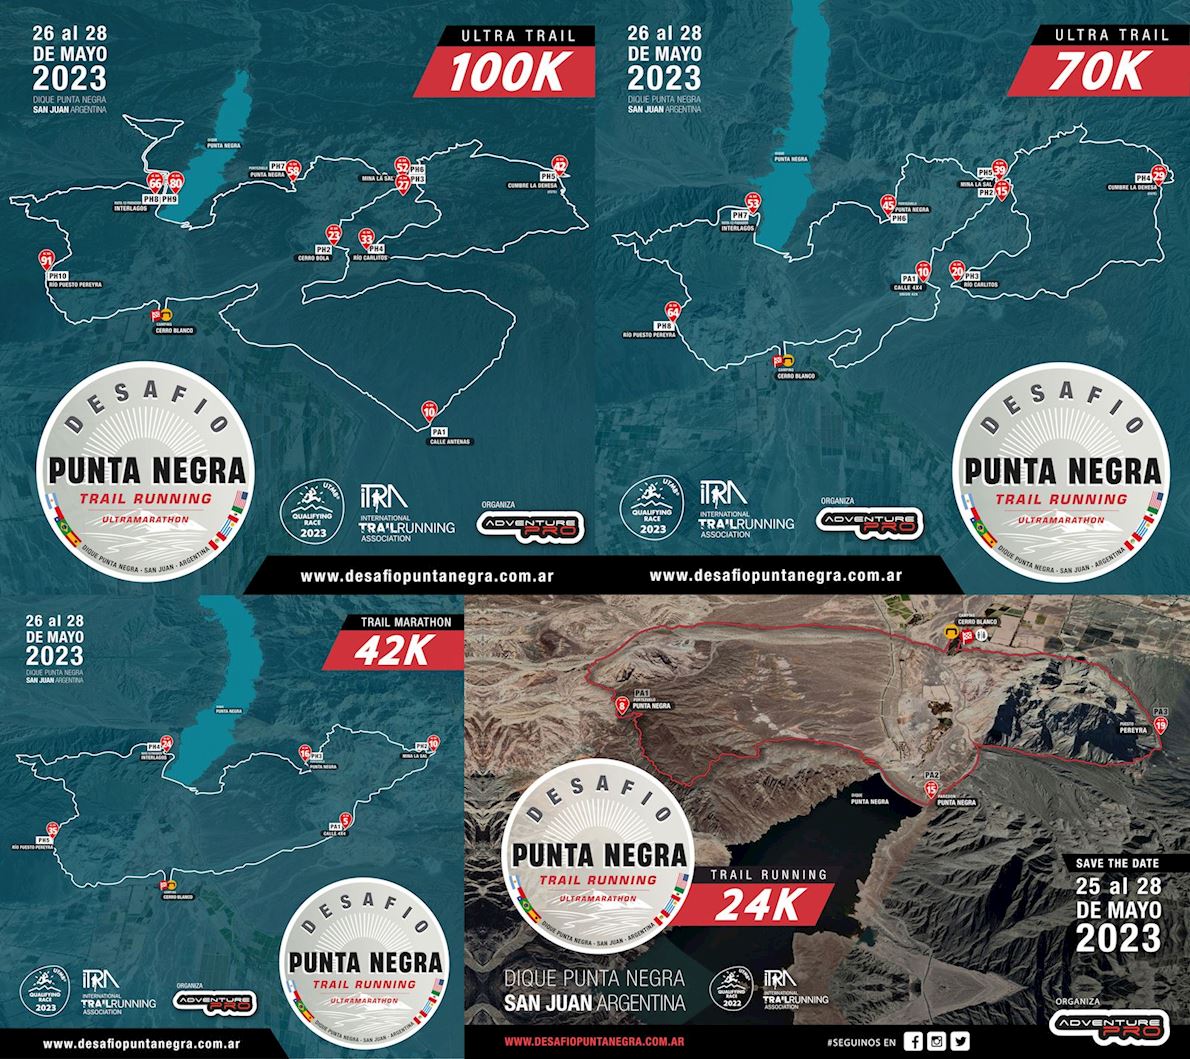 Desafio Punta Negra Trail Ultra Route Map